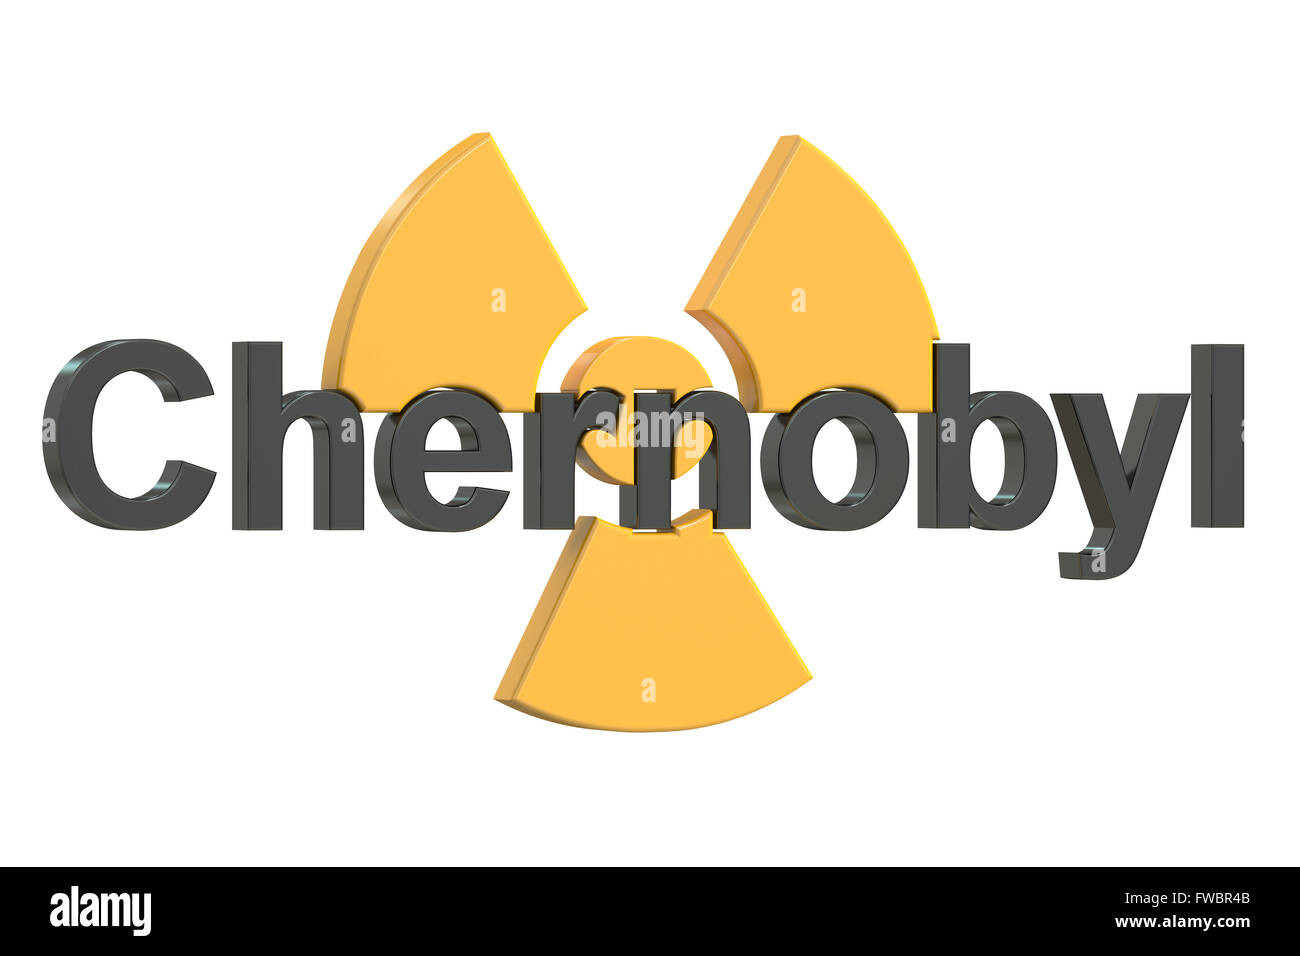 Disastro di Chernobyl concetto, rendering 3D Foto Stock